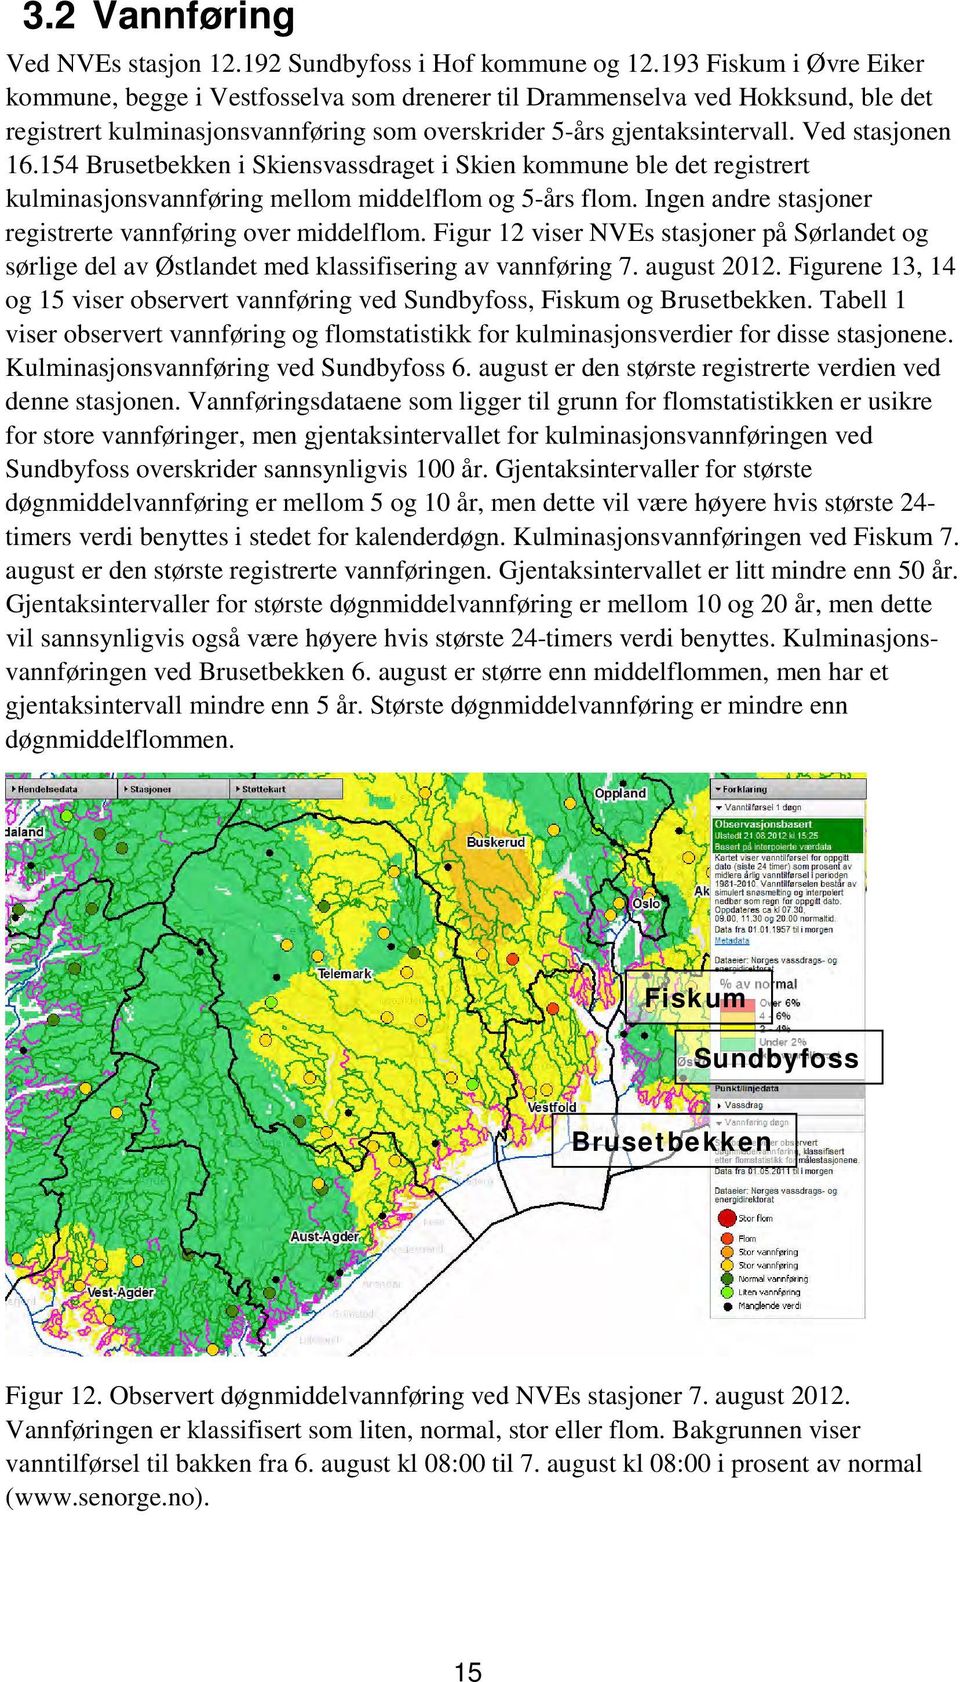 154 Brusetbekken i Skiensvassdraget i Skien kommune ble det registrert kulminasjonsvannføring mellom middelflom og 5-års flom. Ingen andre stasjoner registrerte vannføring over middelflom.